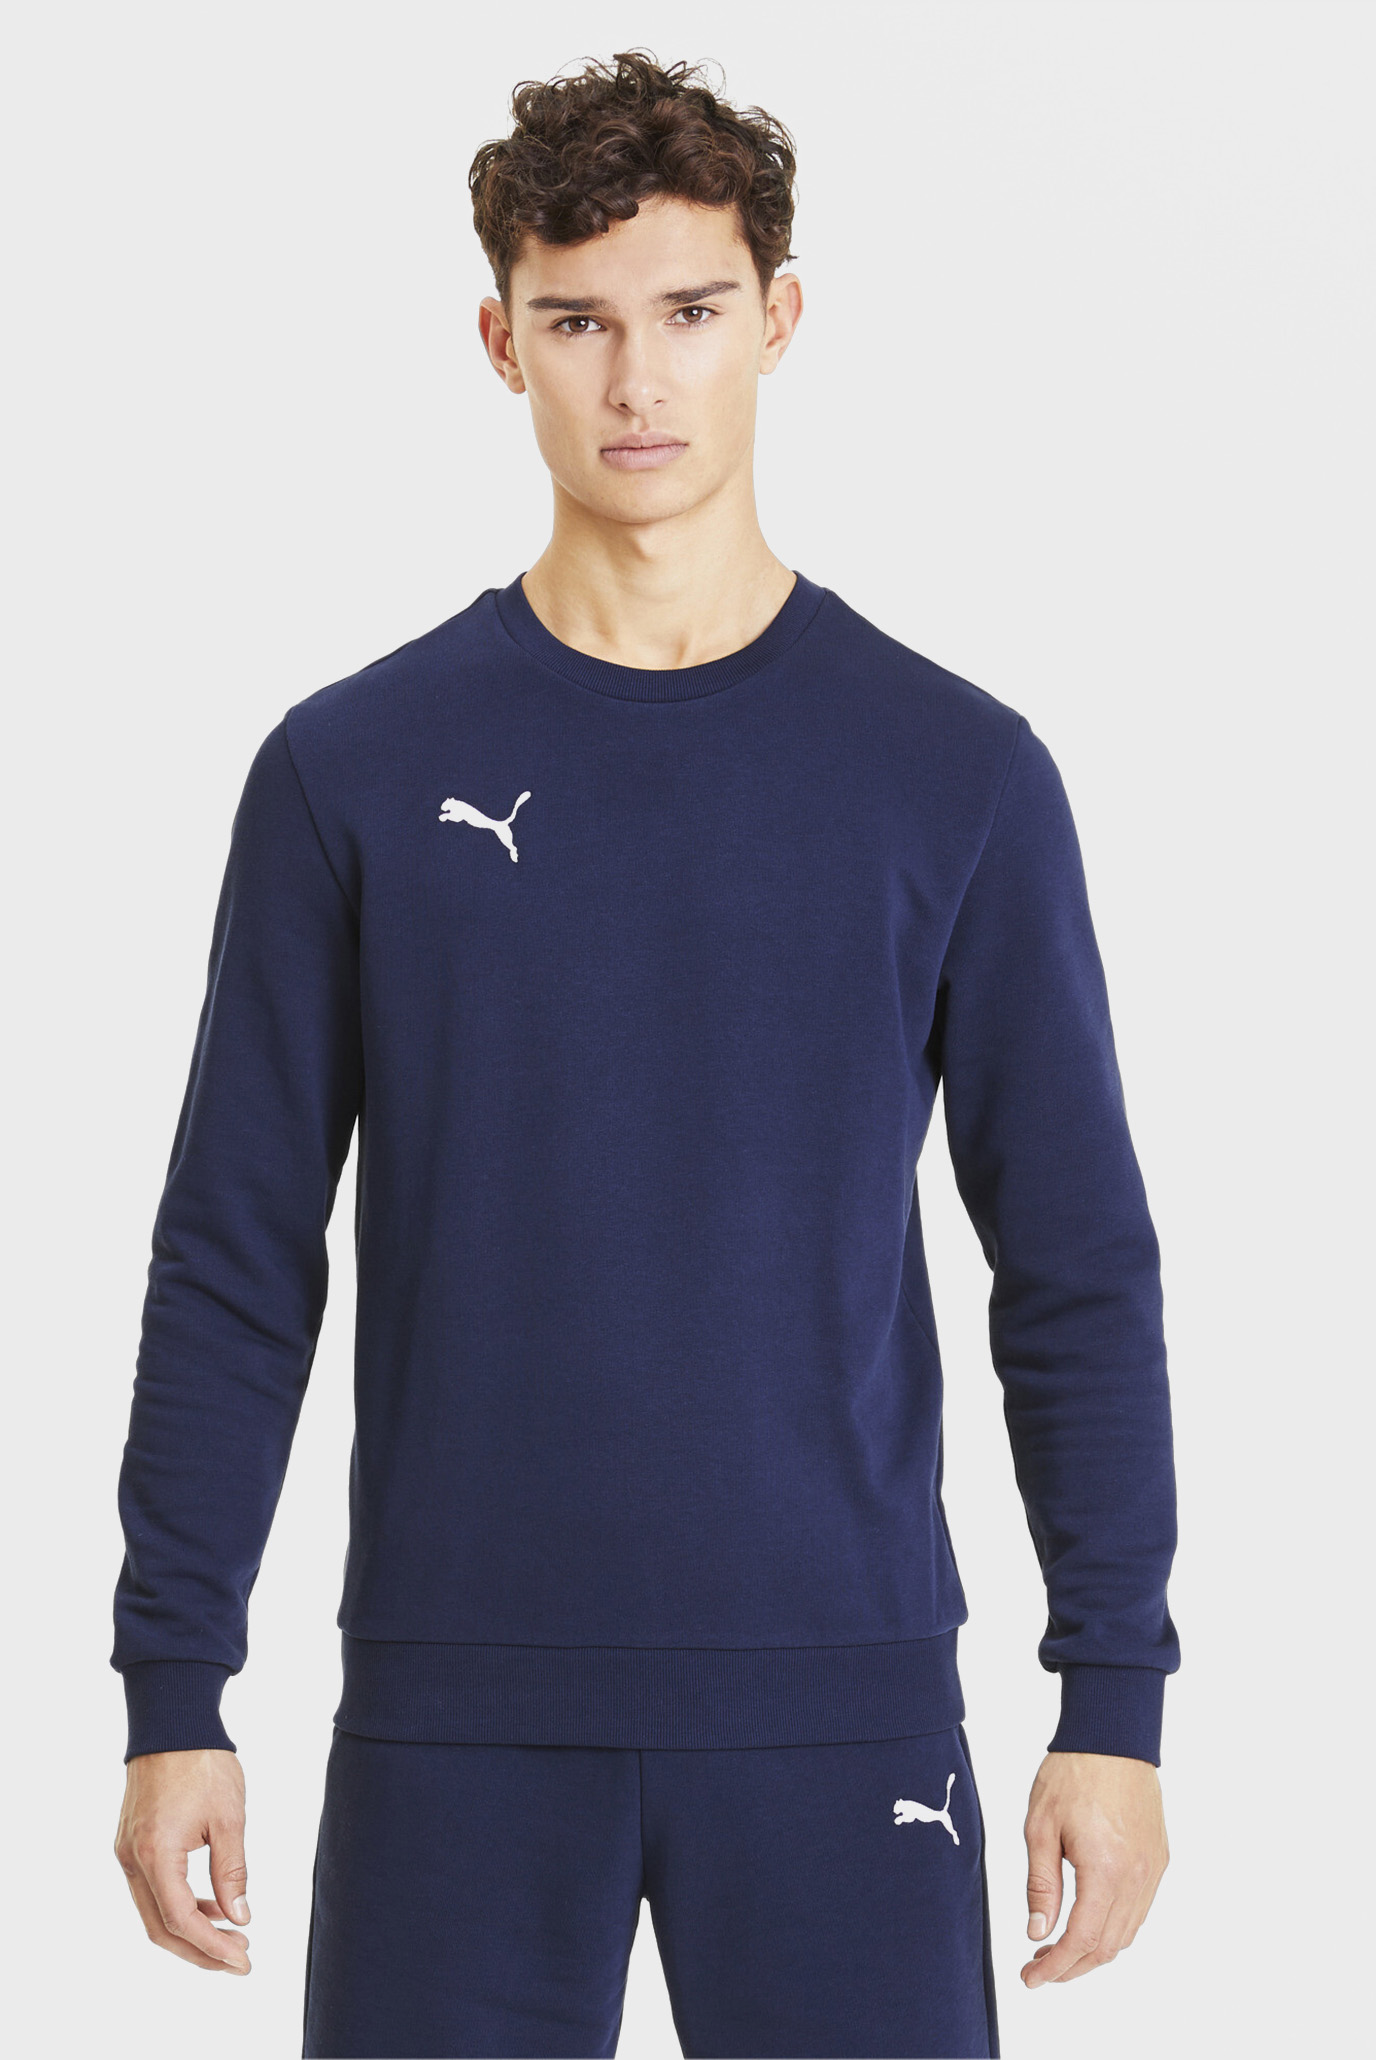 Мужской темно-синий свитшот GOAL Casuals Men’s Sweater 1